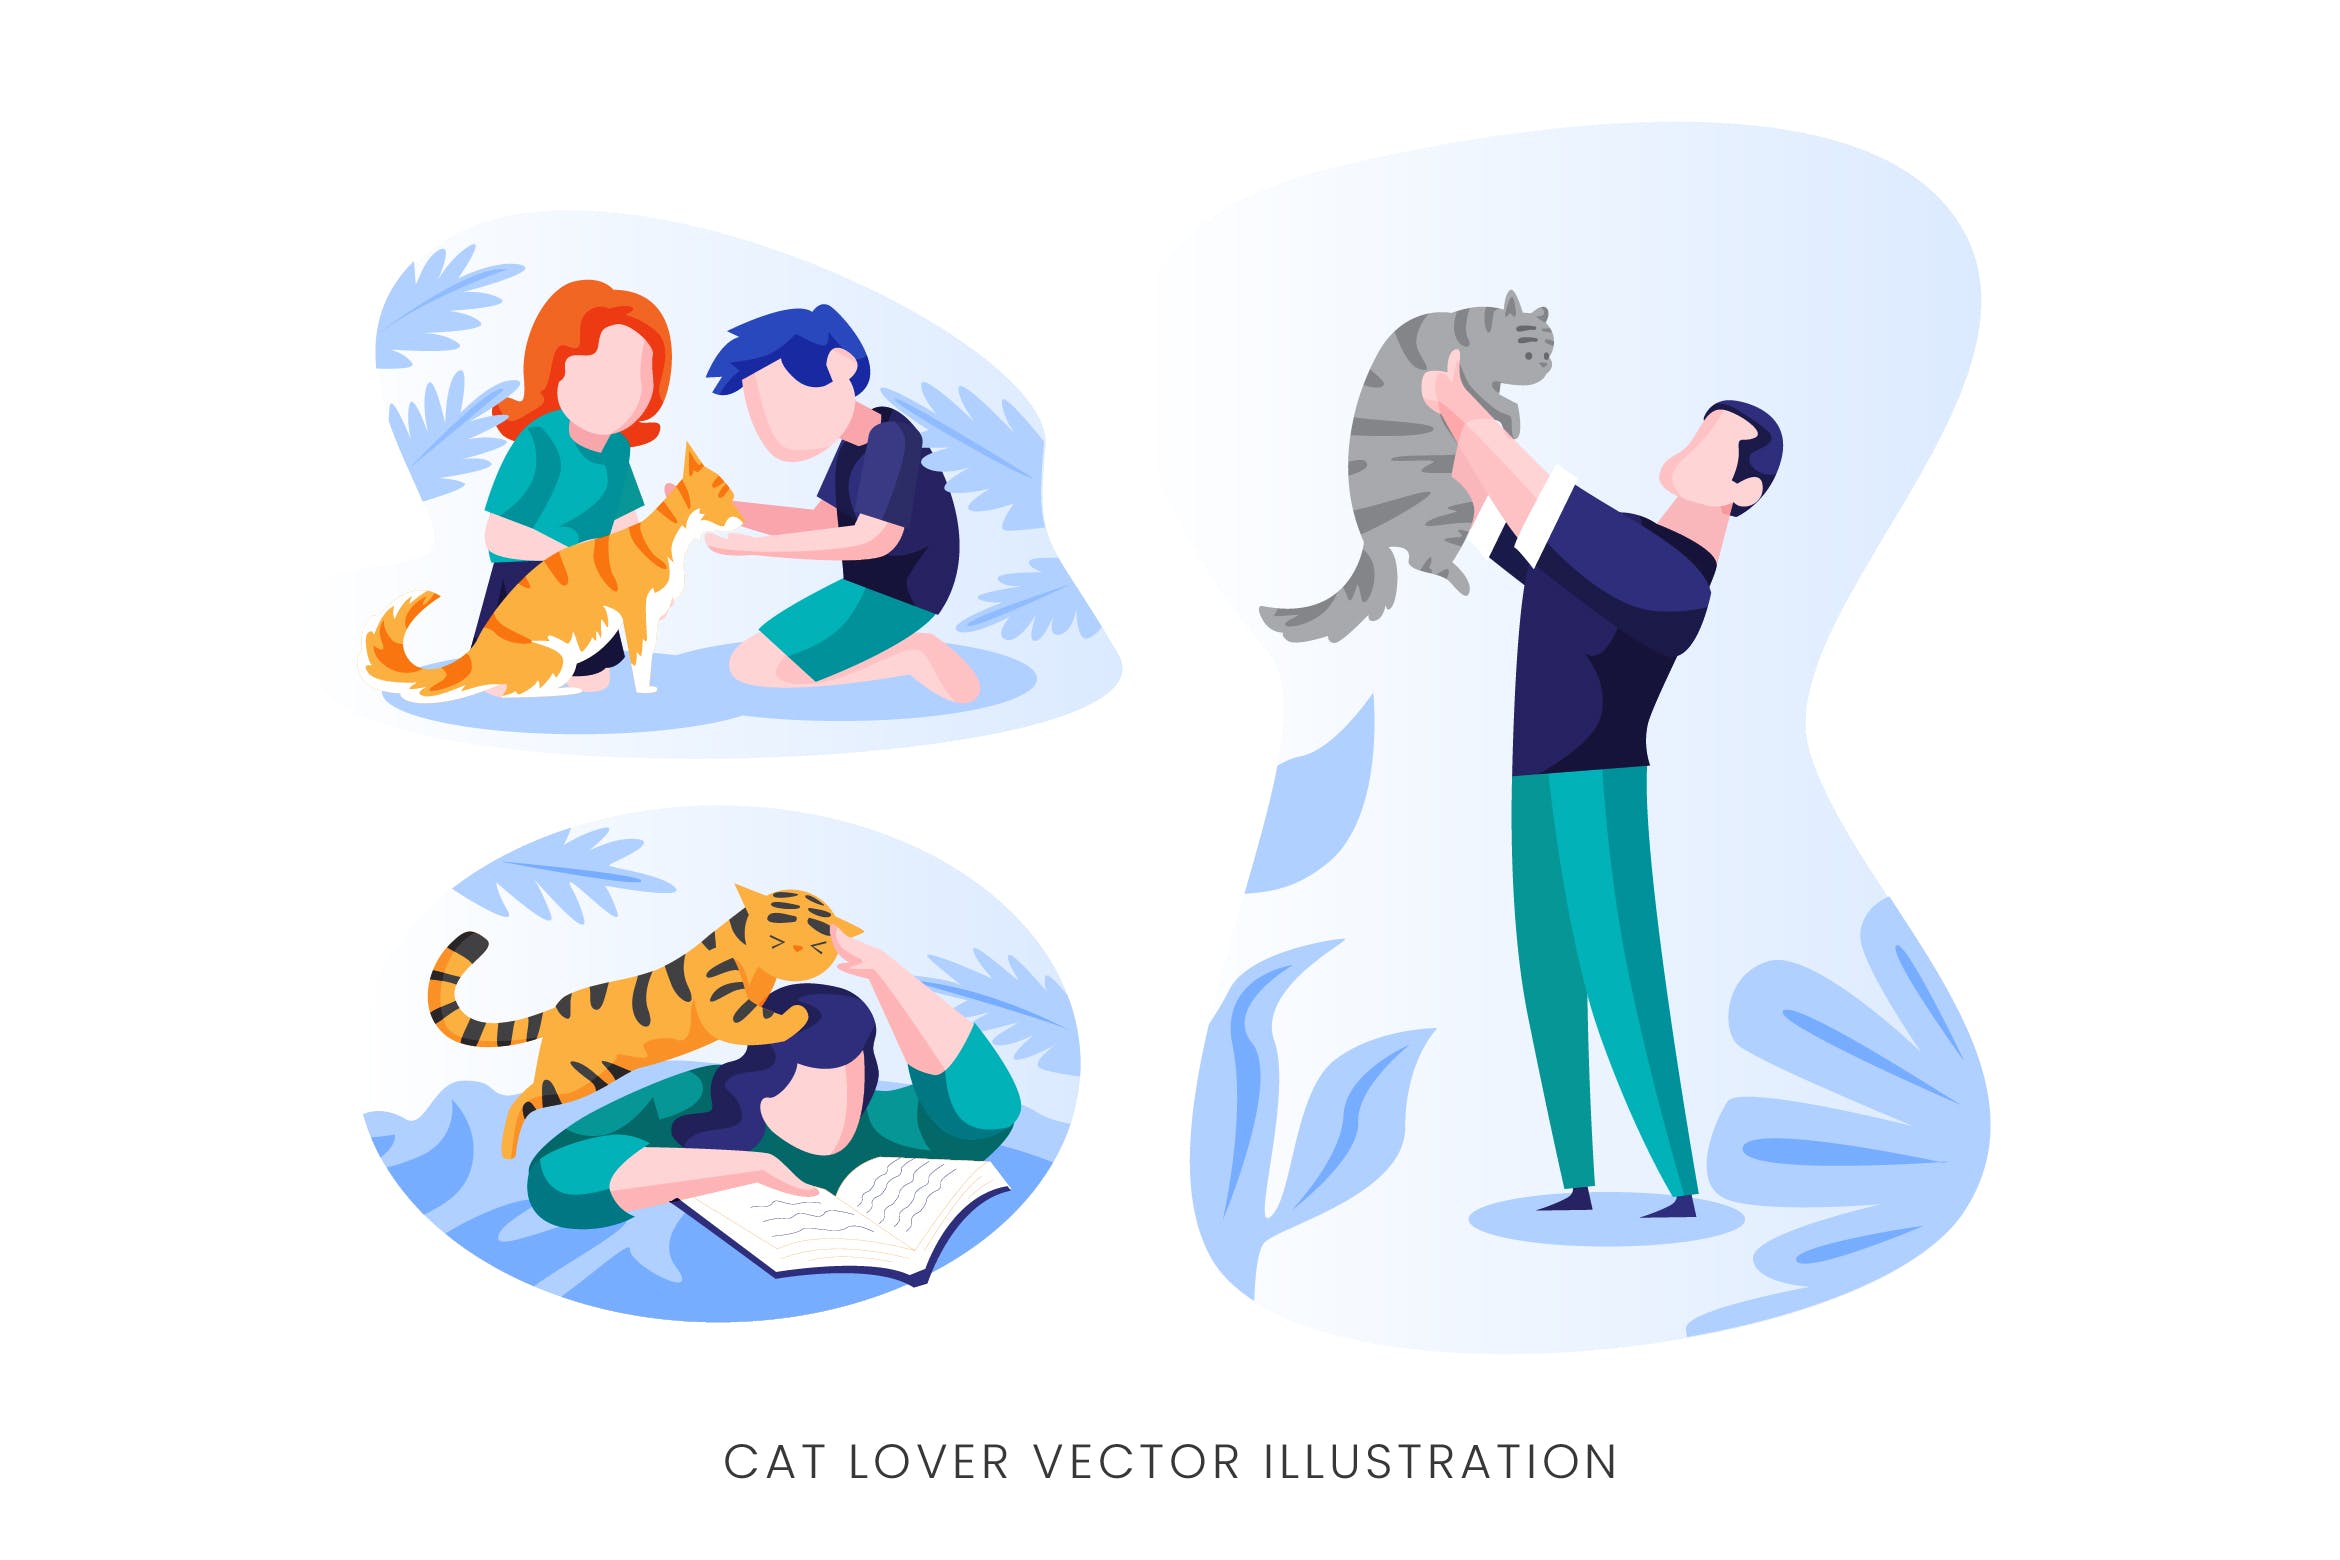 爱猫人士人物形象矢量手绘第一素材精选设计素材 Cat Lover Vector Character Set插图